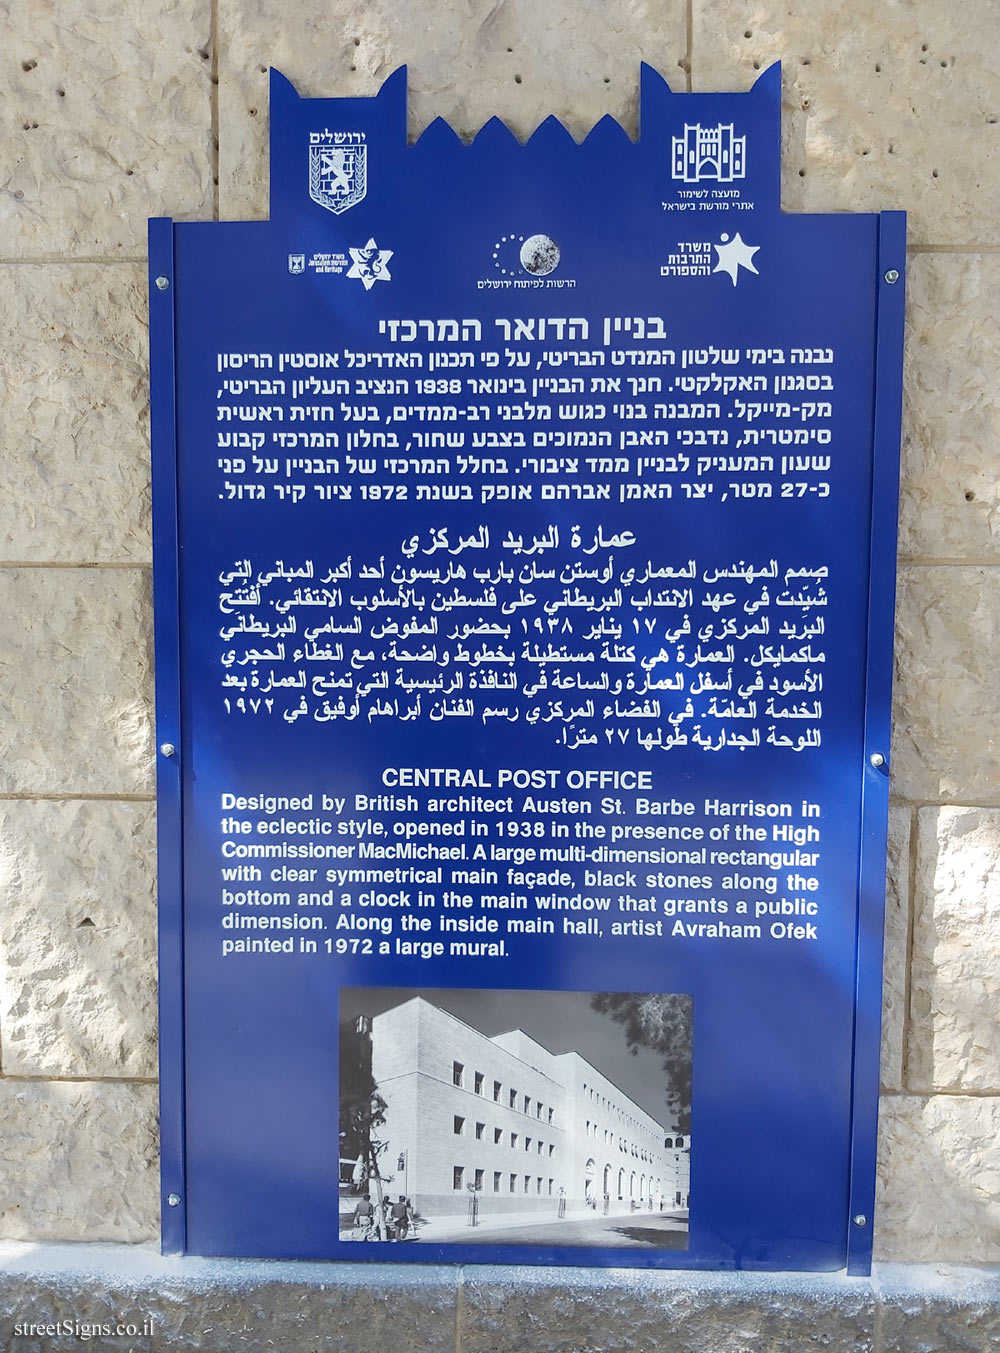 Jerusalem - Heritage Sites in Israel - Central Post Office